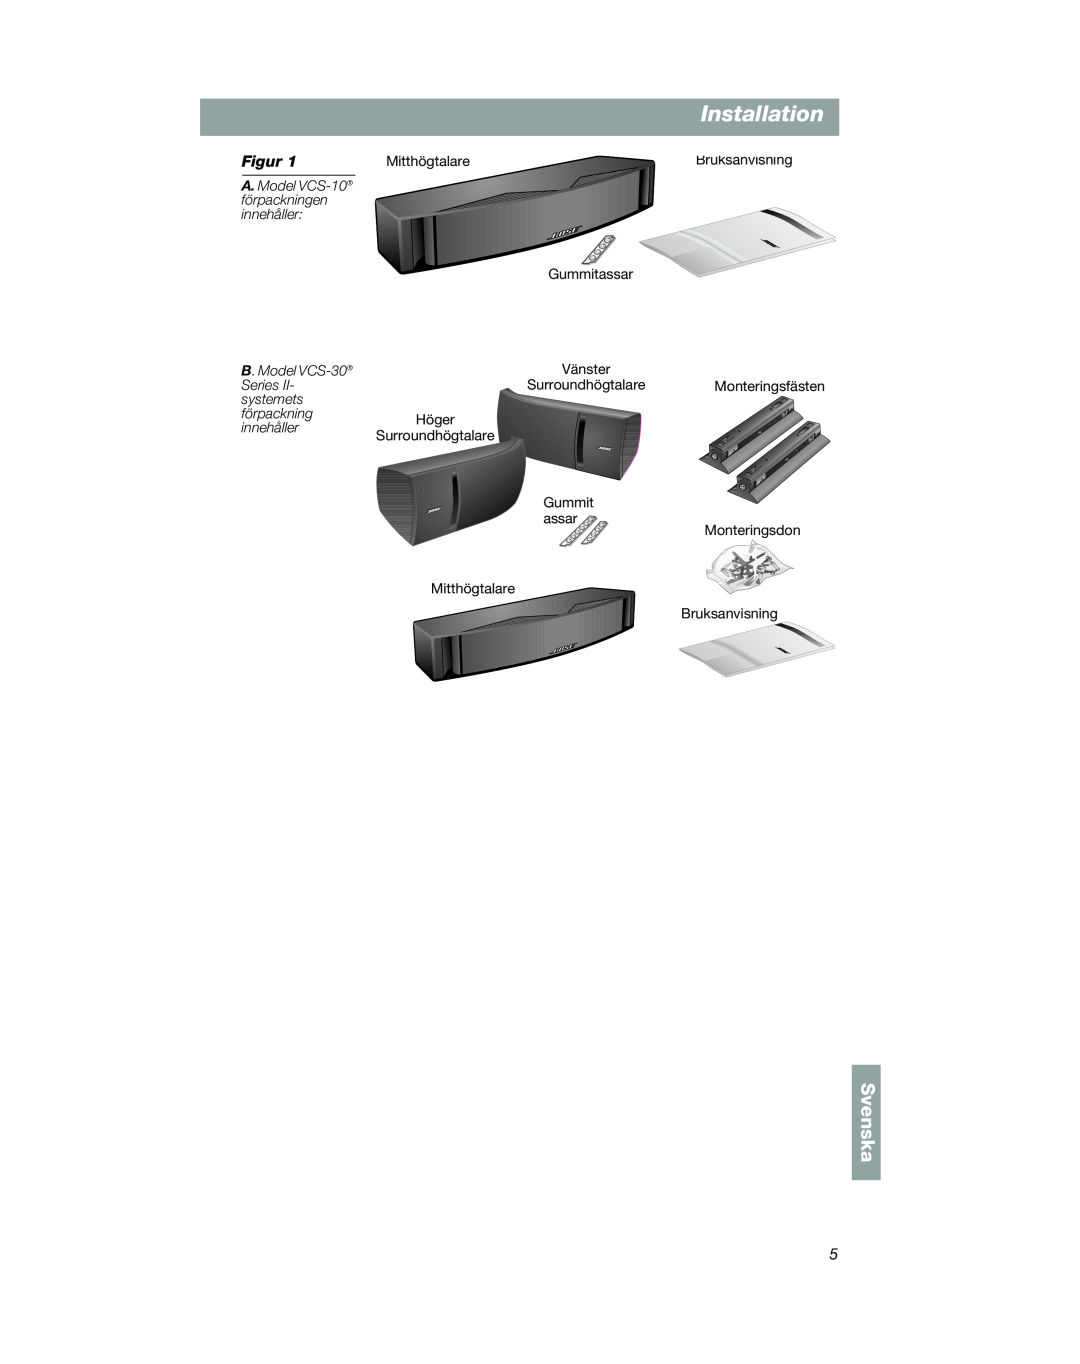 Bose Installation, Svenska, A. Model VCS-10 förpackningen innehåller, B. Model VCS-30, Series, systemets, Gummit, assar 